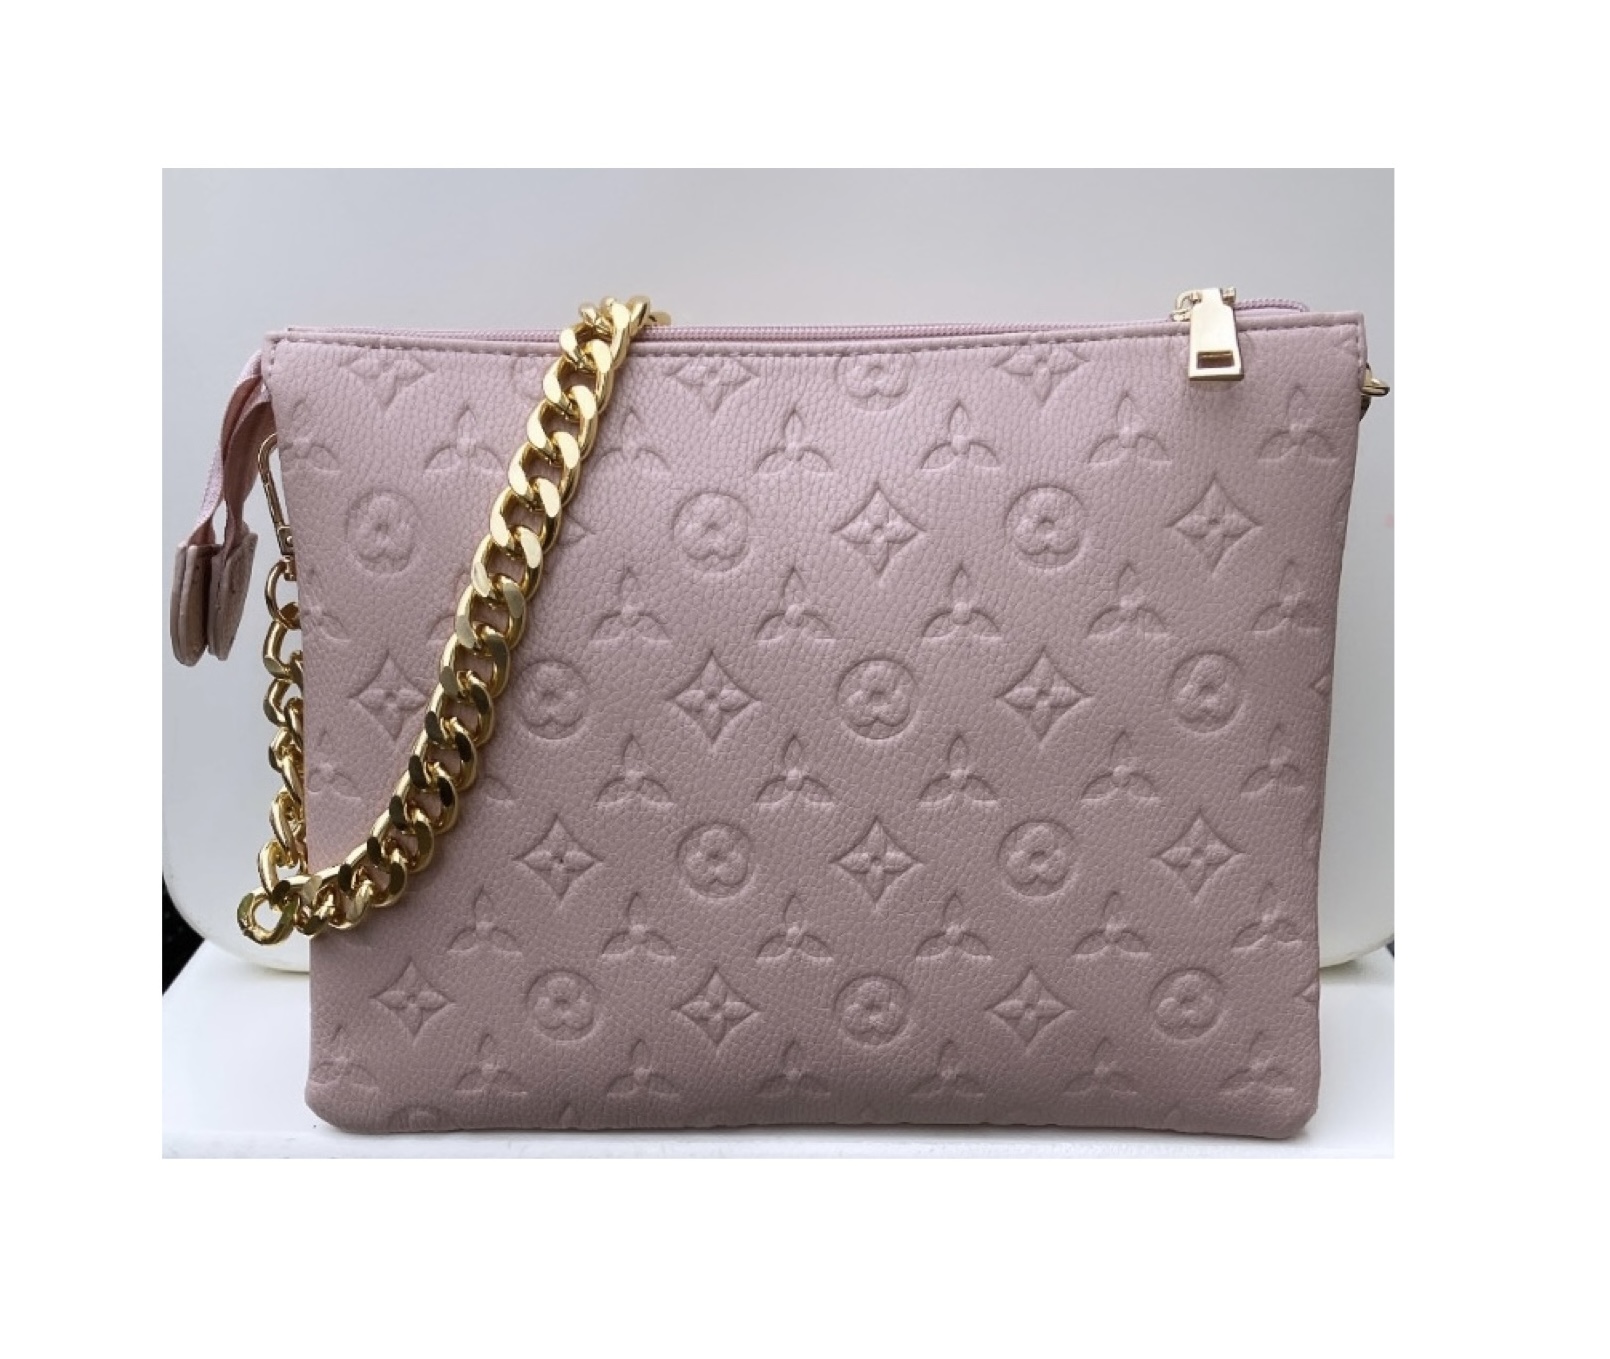 The L Handbag Pink